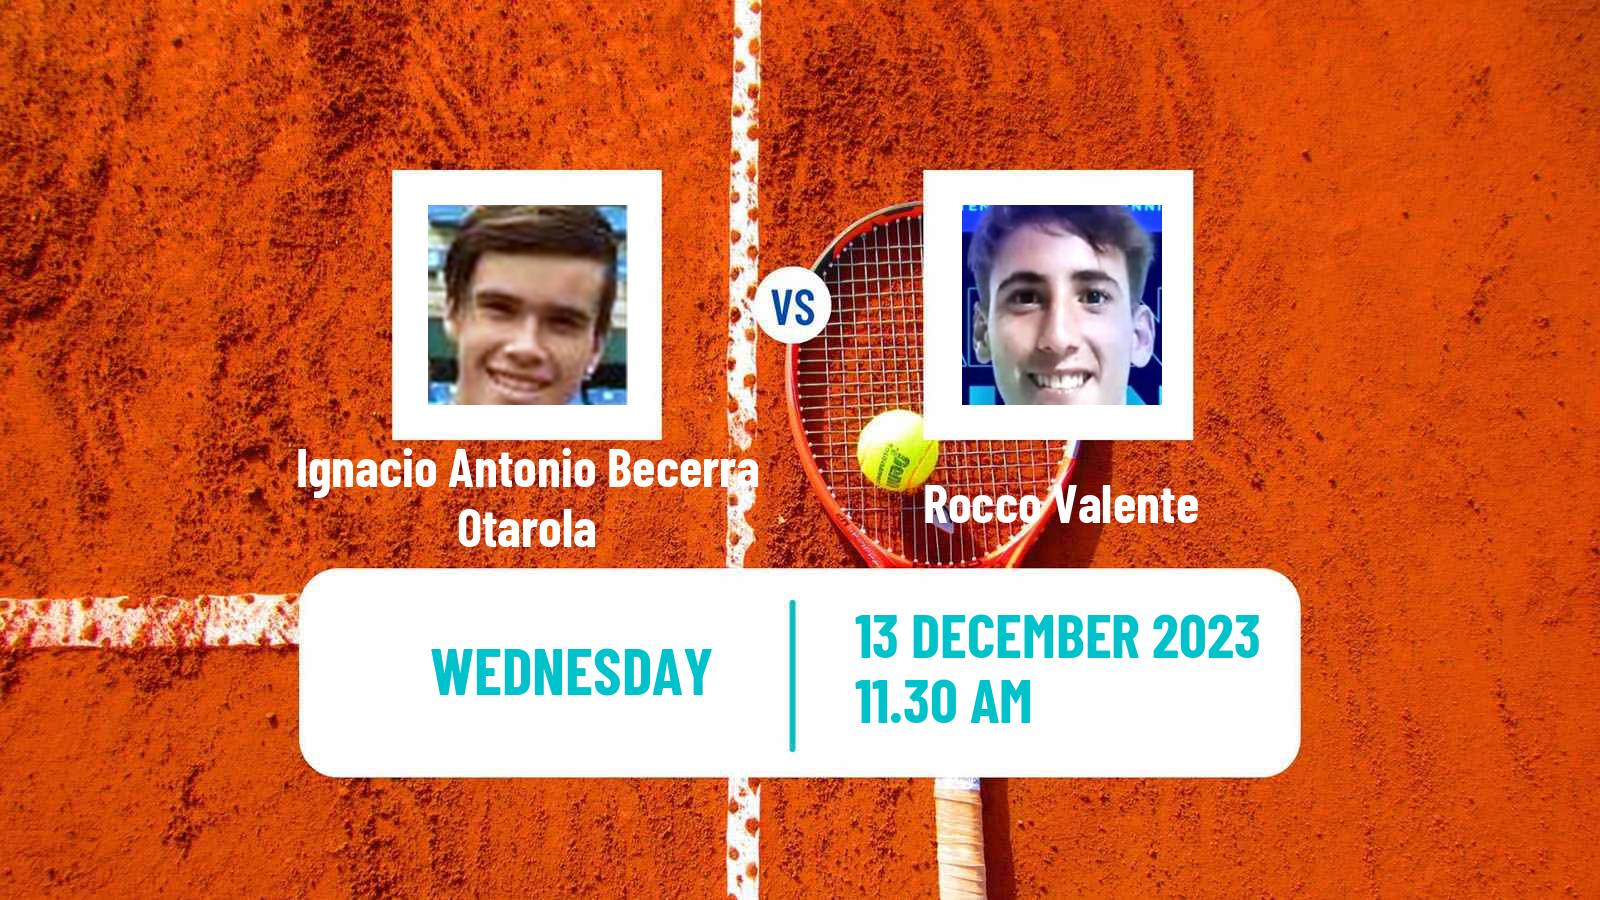 Tennis ITF M15 Concepcion 2 Men Ignacio Antonio Becerra Otarola - Rocco Valente